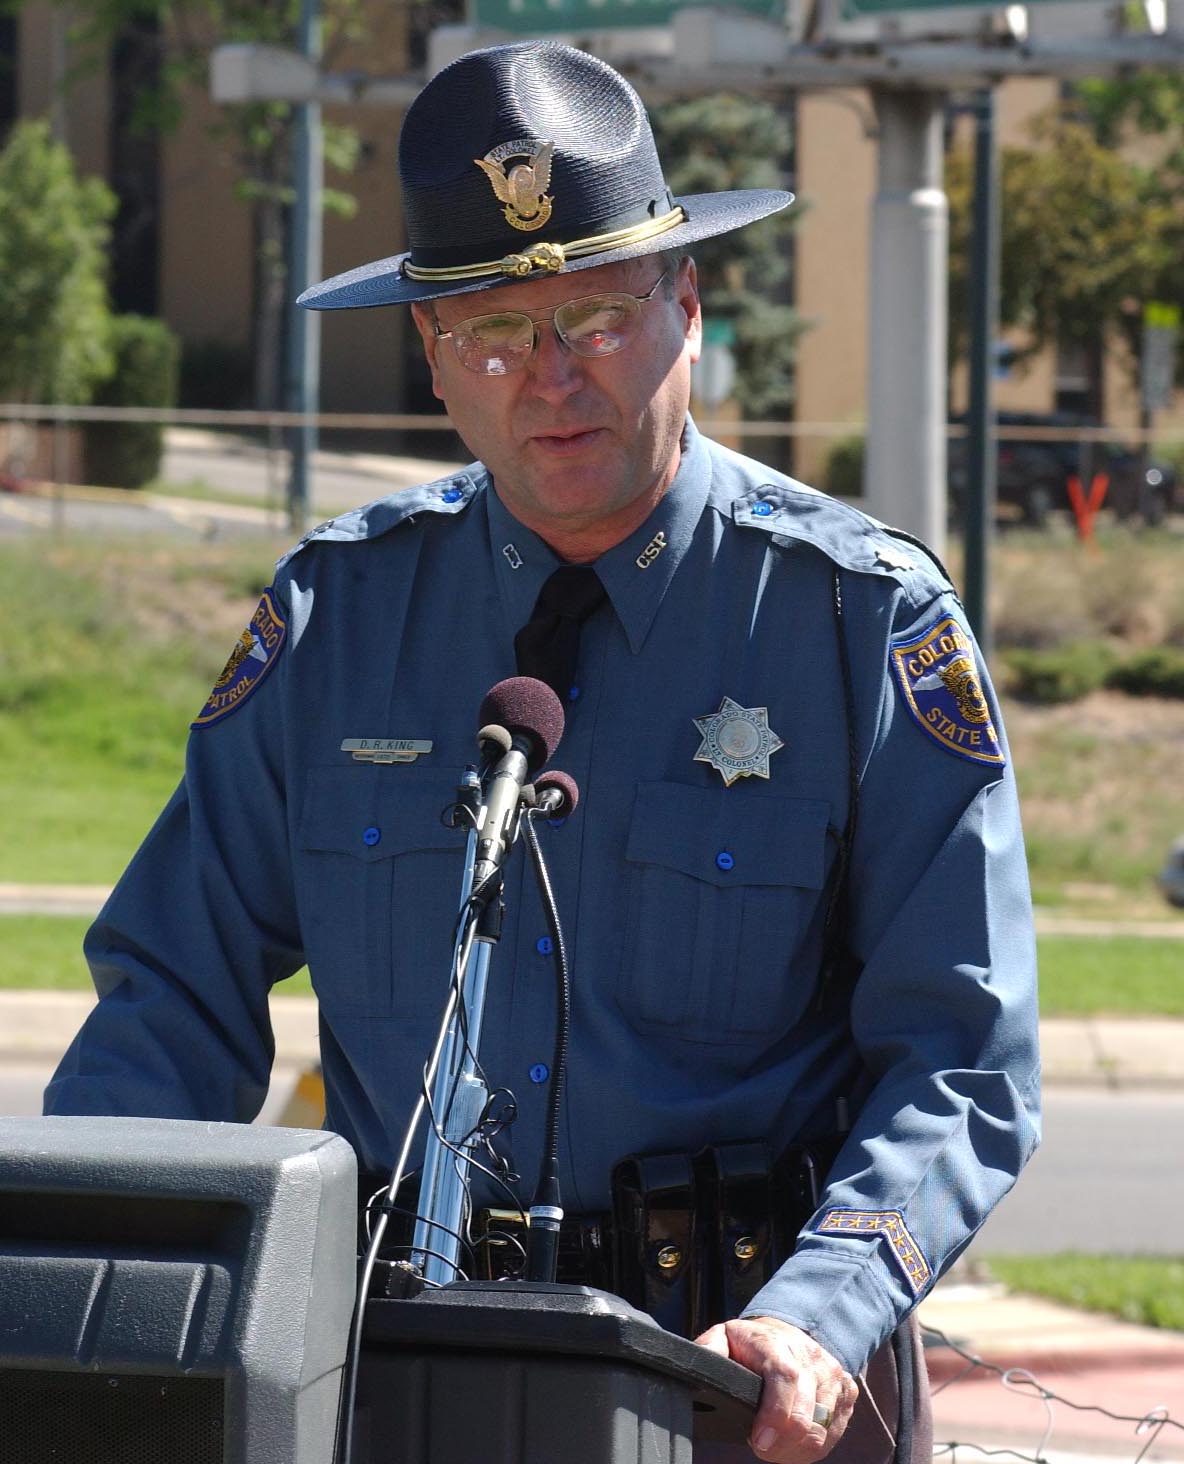 Colorado State Patrolman detail image